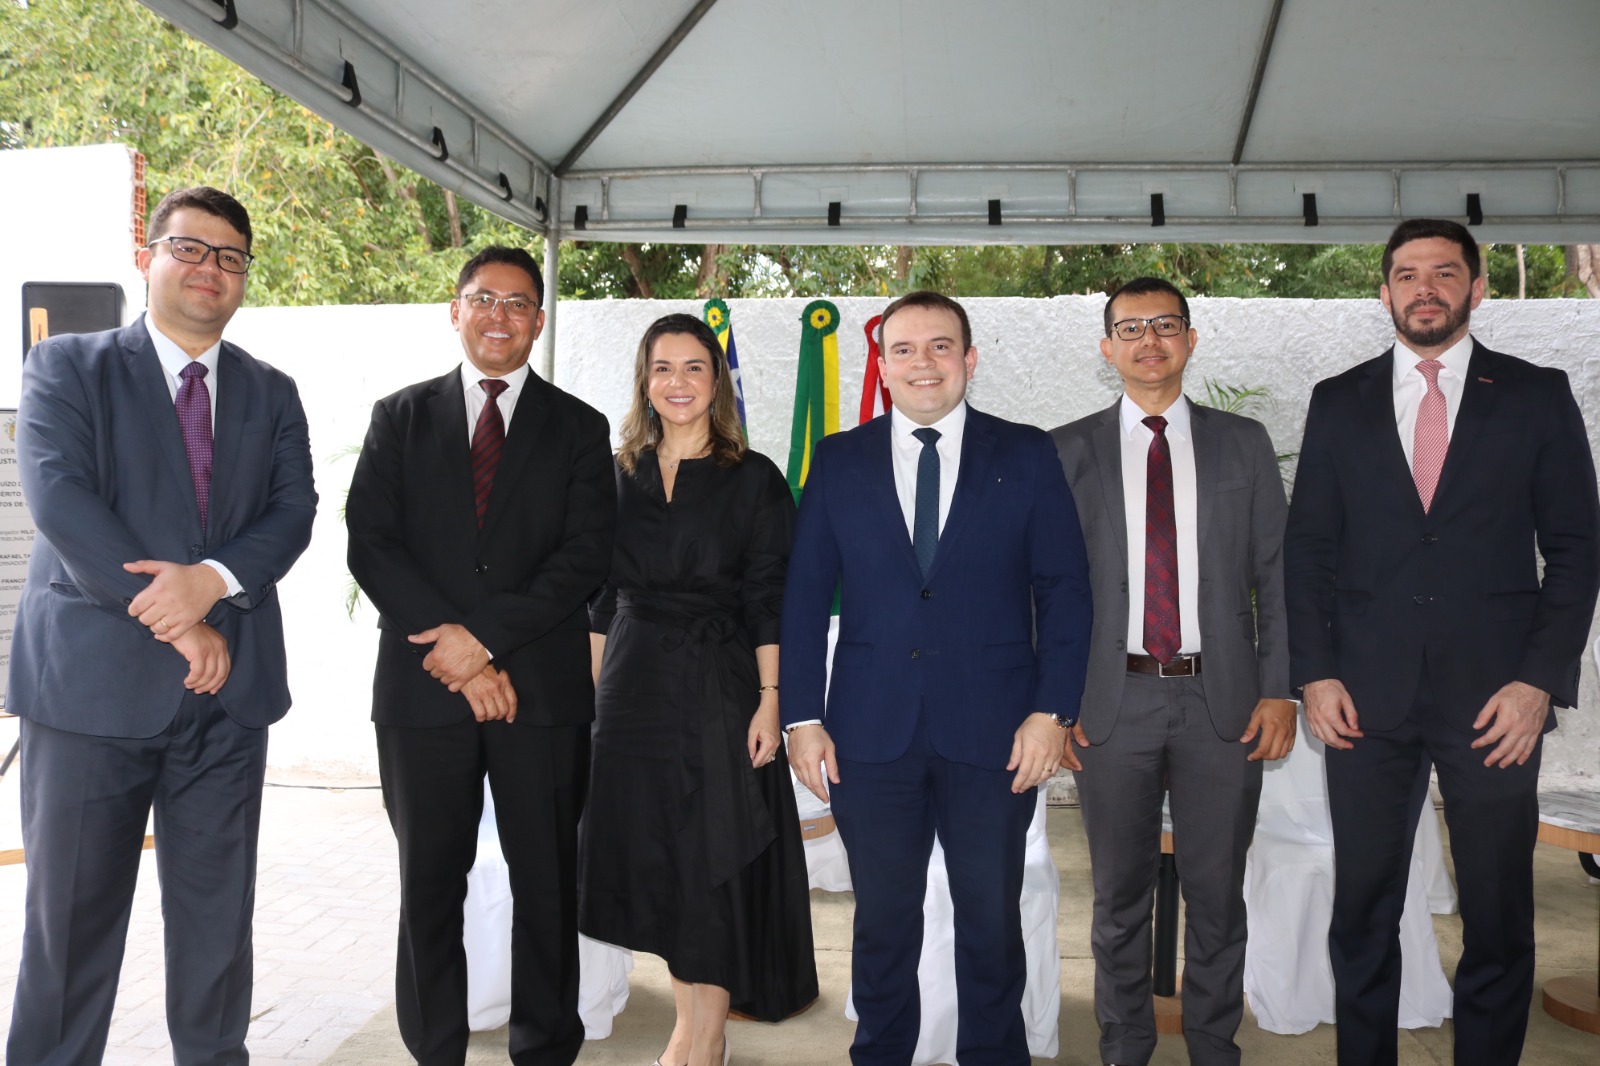 OAB Piauí participa da inauguração do Juízo de Garantias na Comarca de Teresina